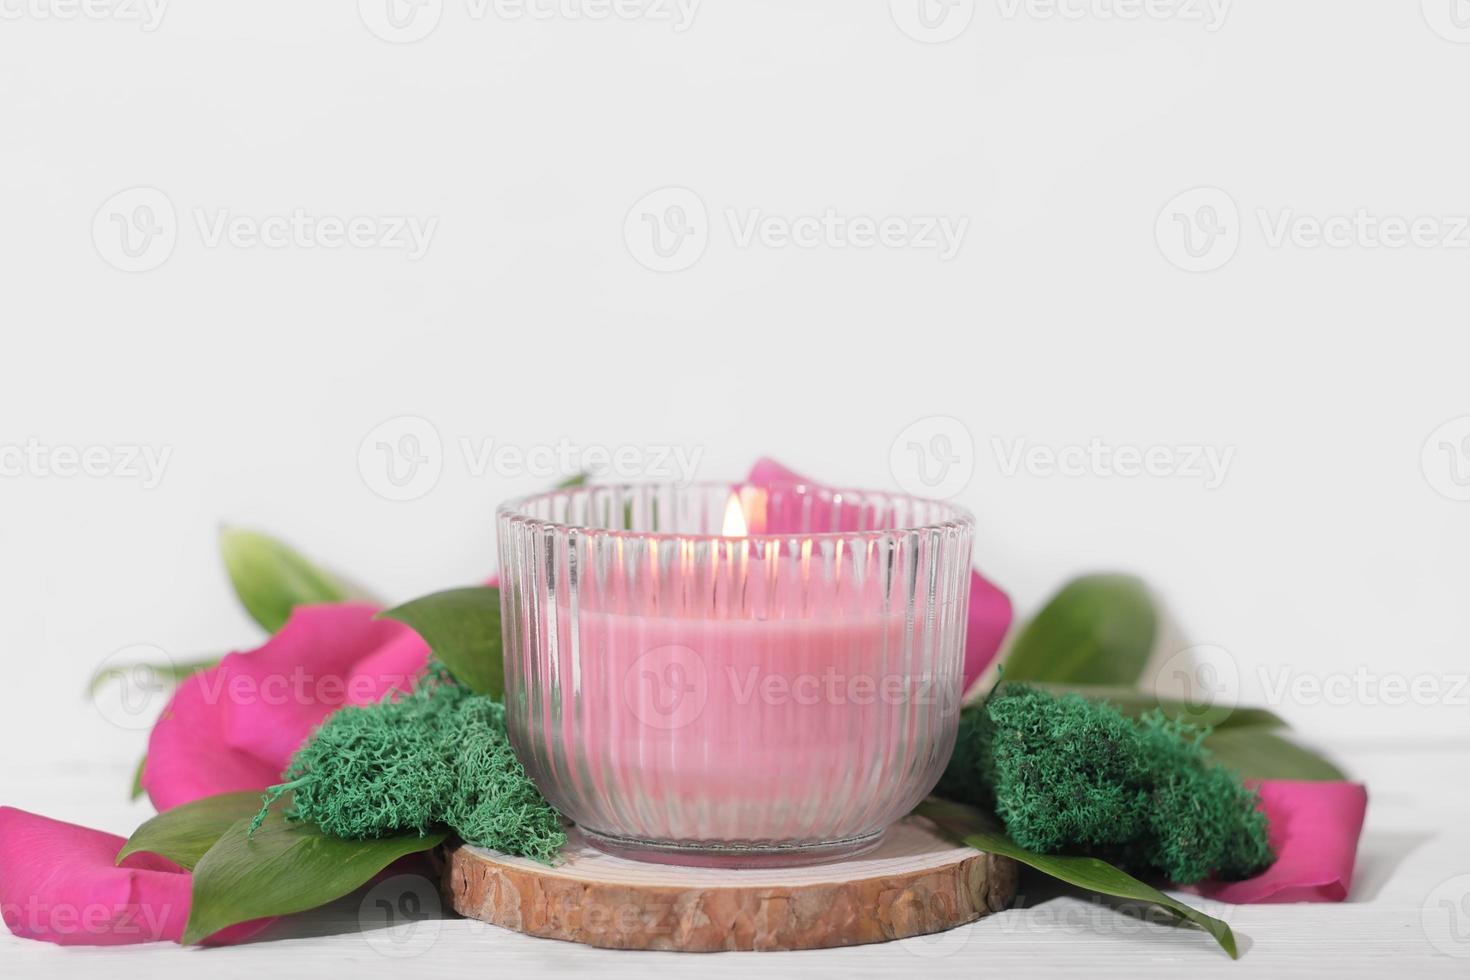 Vela de cera de soja a base de plantas veganas en tarro de cristal. vela rosa vegetariana hecha de cera de soja natural en podim de madera con decoración floral. foto